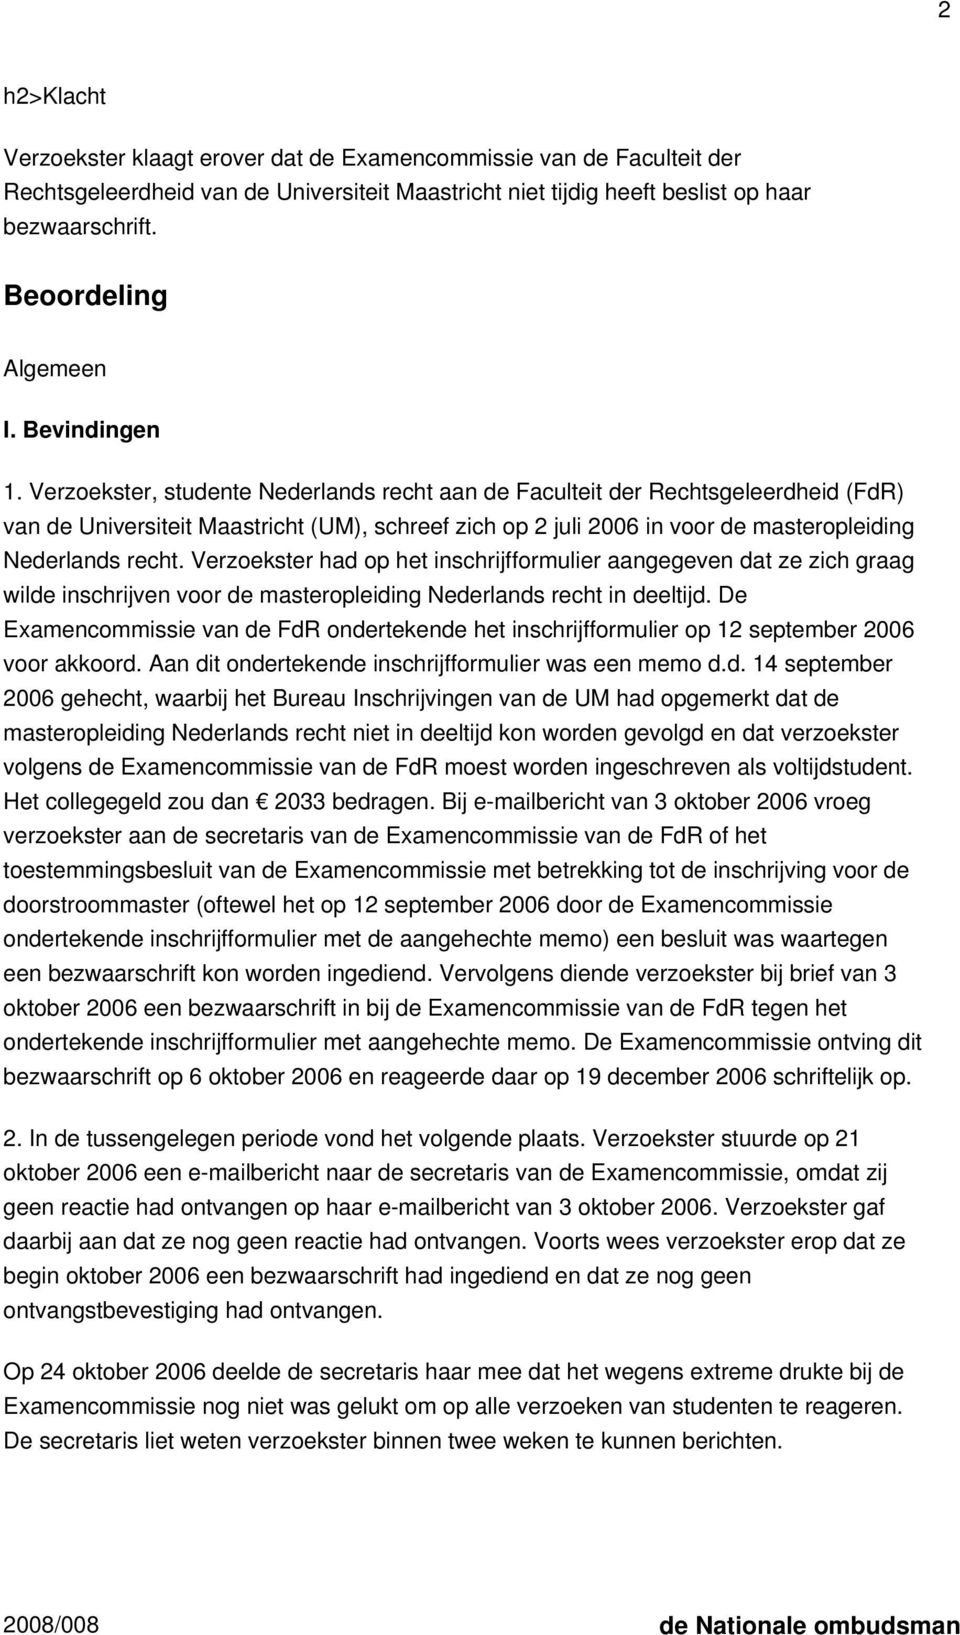 Verzoekster, studente Nederlands recht aan de Faculteit der Rechtsgeleerdheid (FdR) van de Universiteit Maastricht (UM), schreef zich op 2 juli 2006 in voor de masteropleiding Nederlands recht.